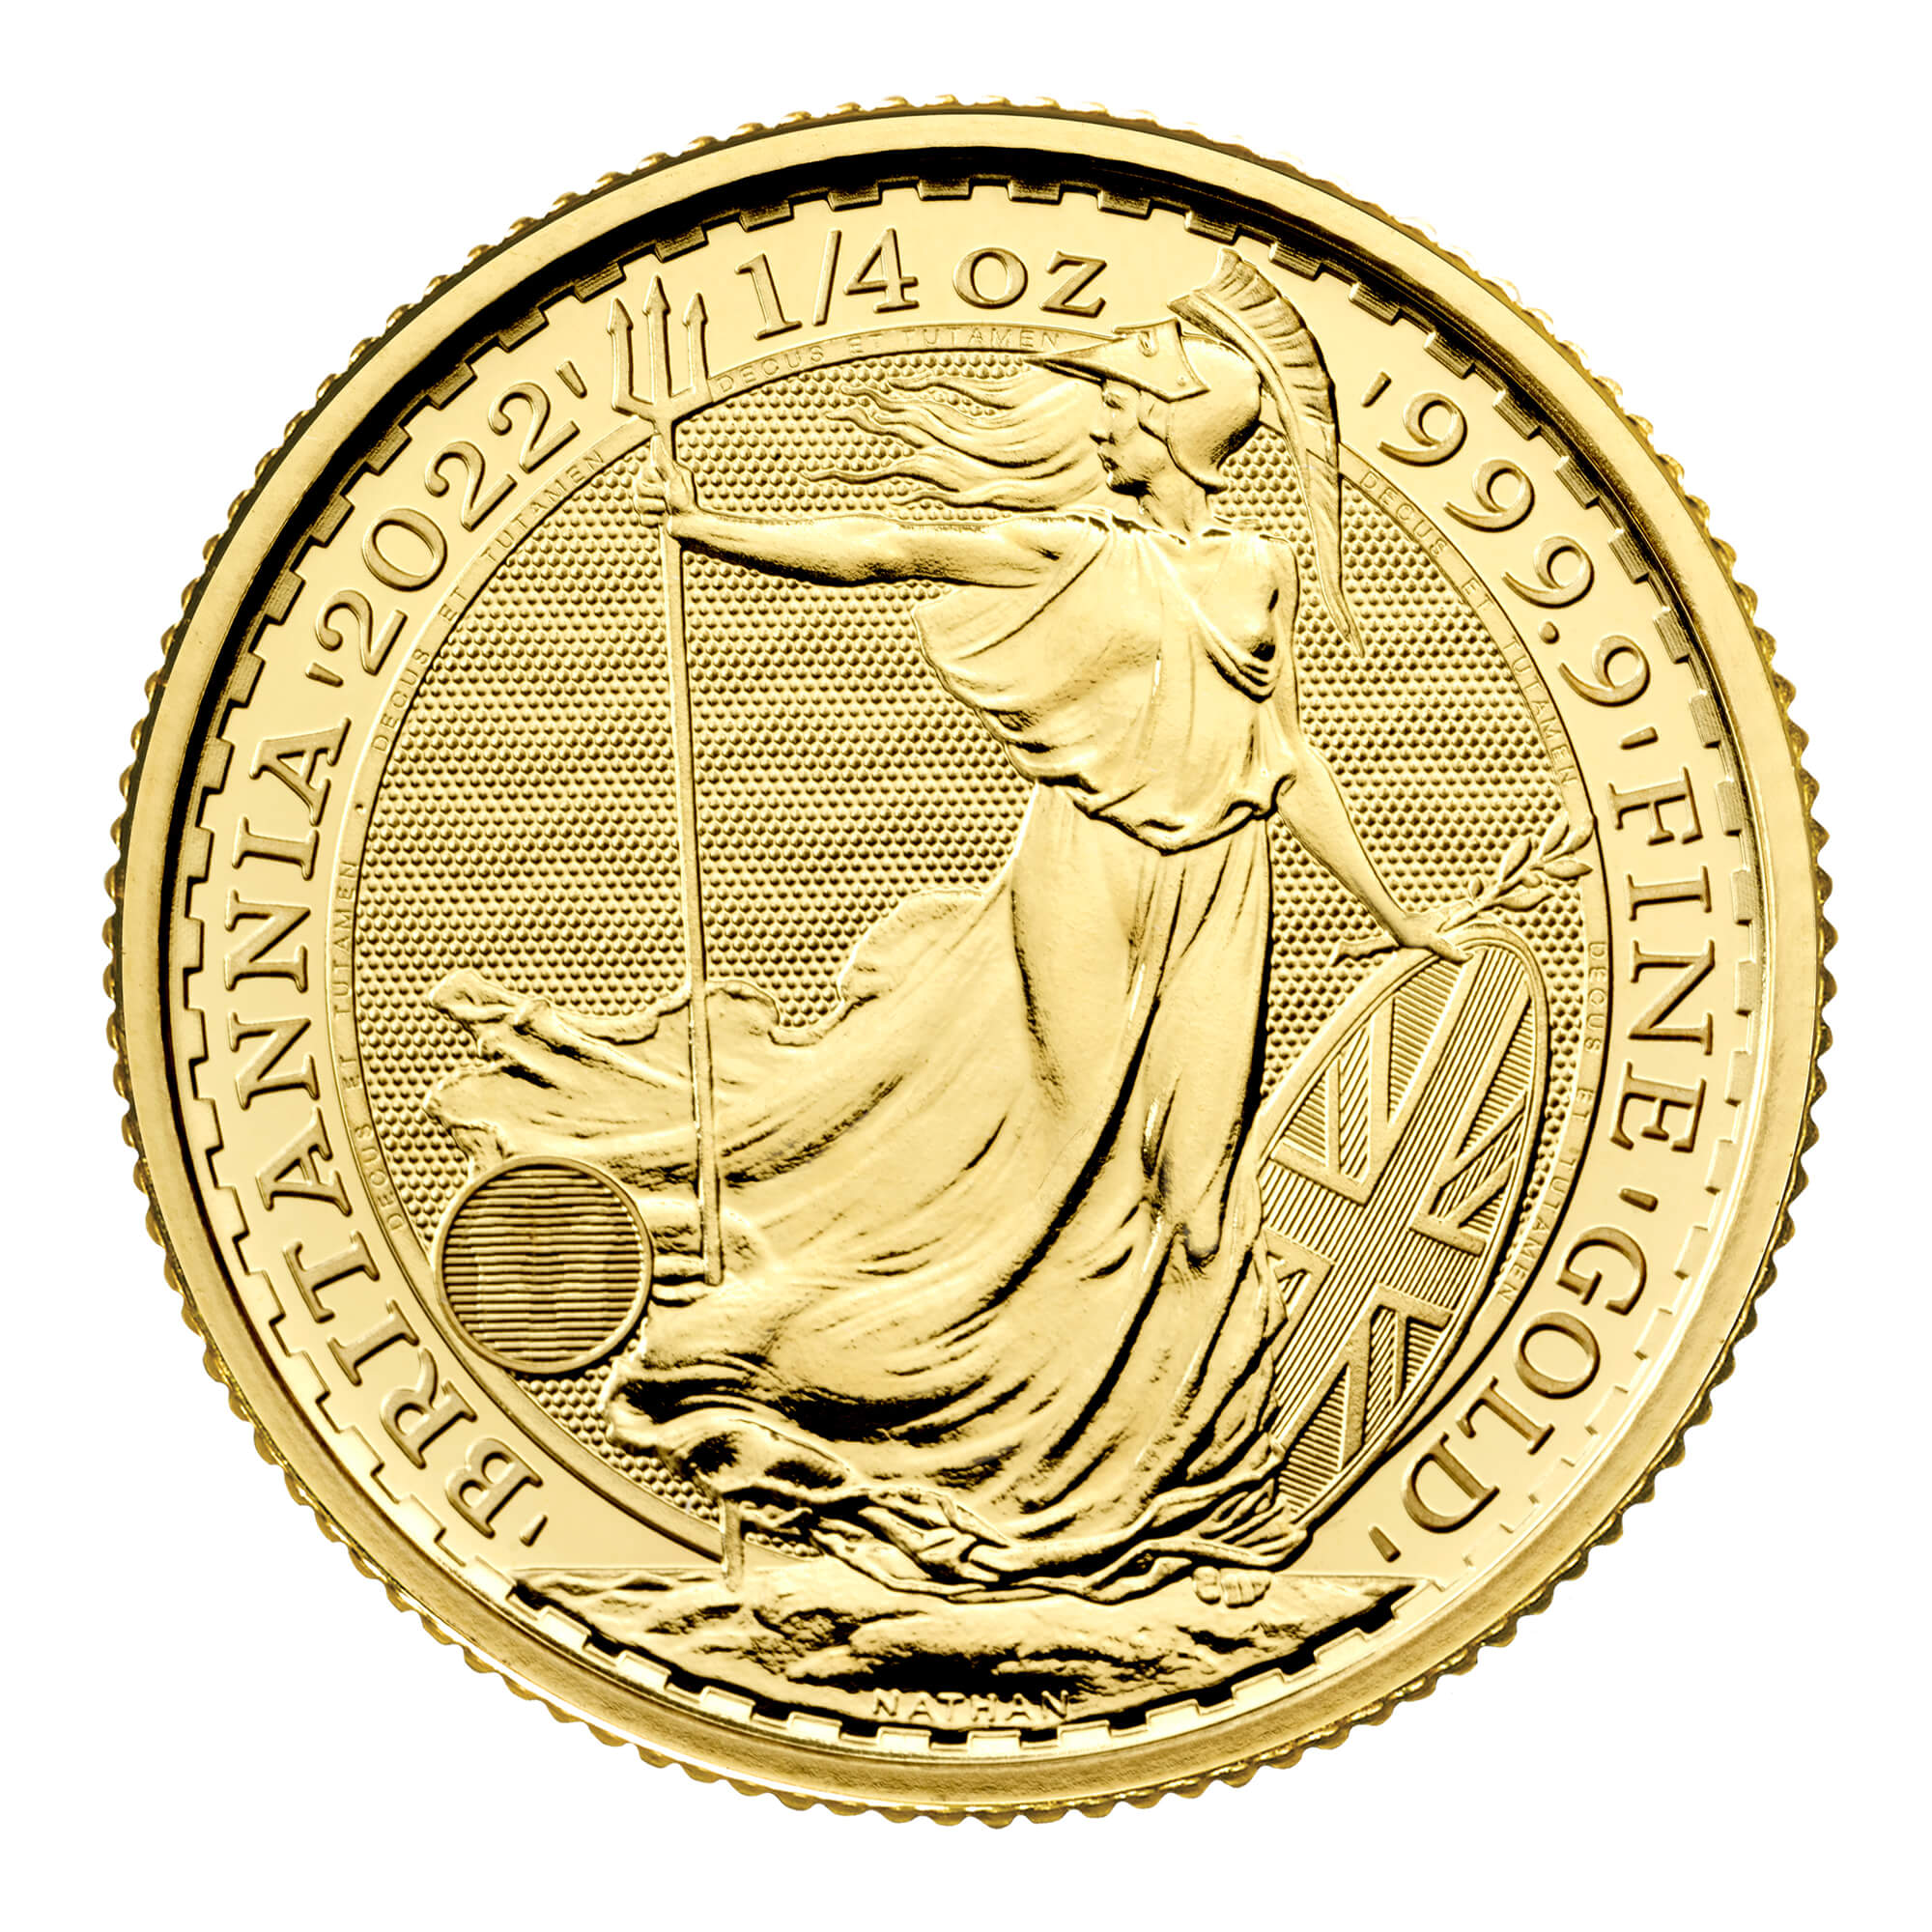 Britannia 2022 1/4 oz Gold Bullion Coin